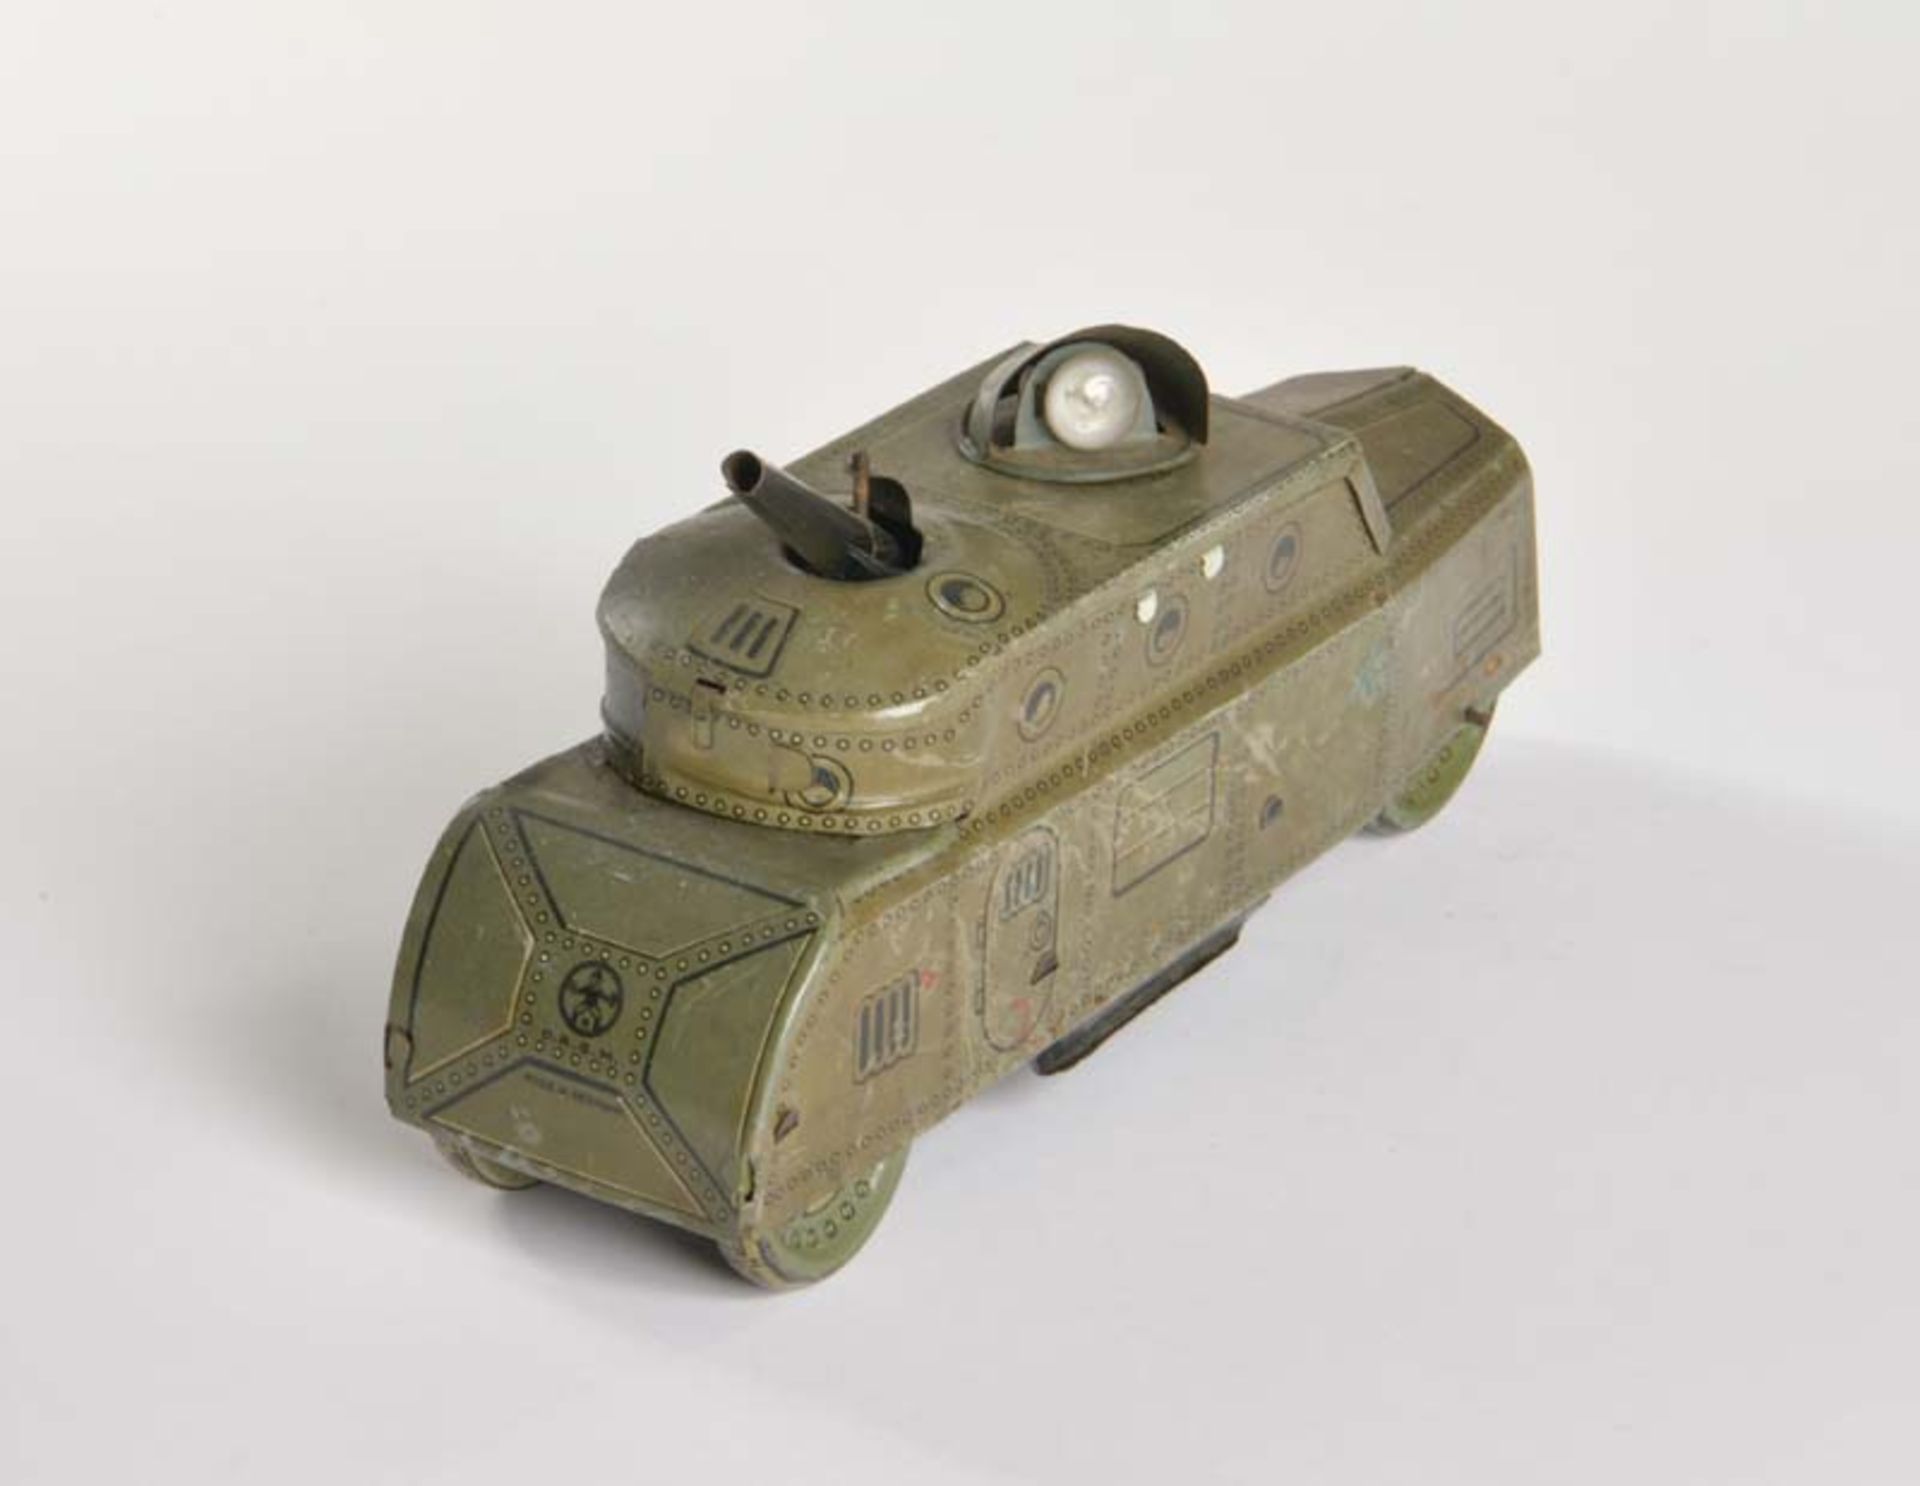 Richard & Co, Panzerwagen, Germany VK, 24 cm, Blech, UW ok, LM, Z 3 - Bild 3 aus 4